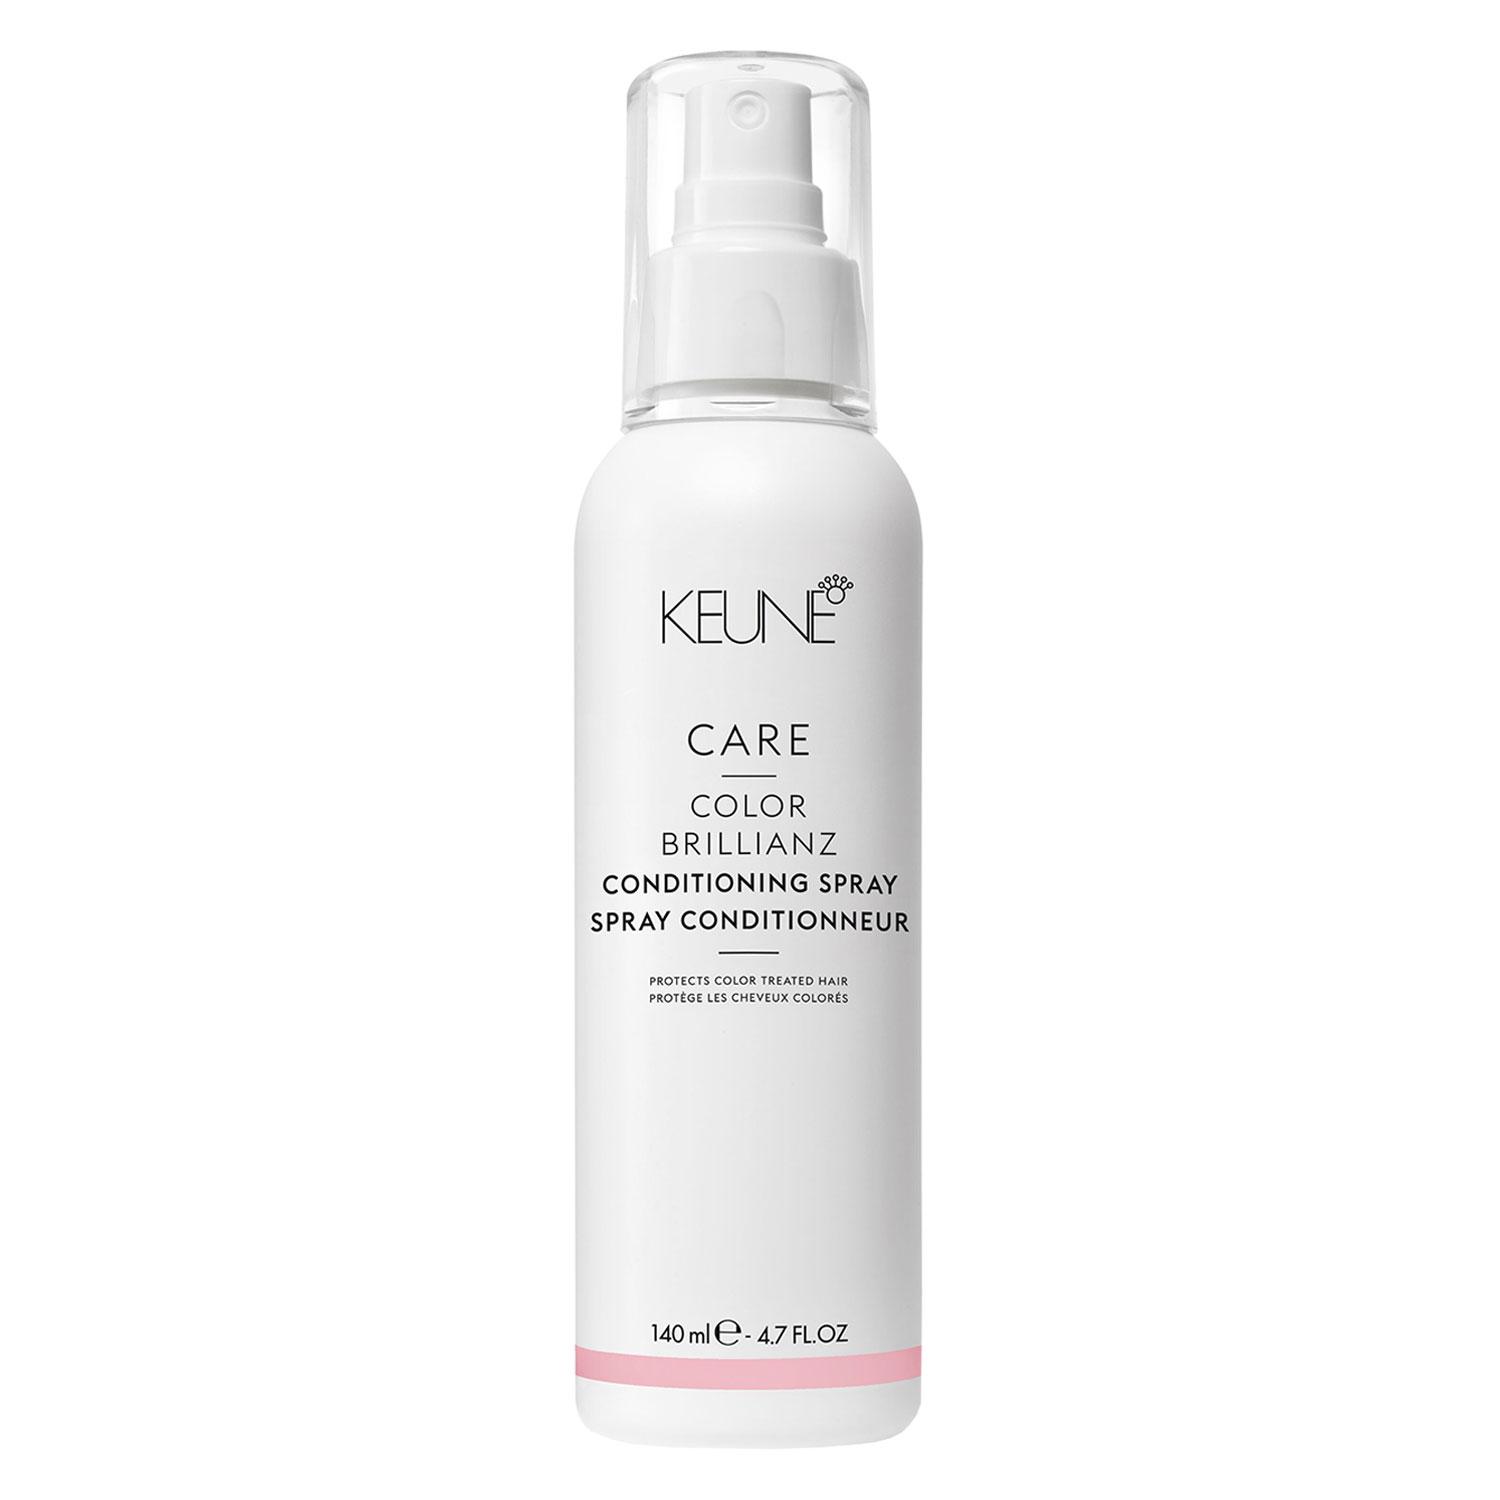 Keune Care - Color Brillianz Conditioning Spray